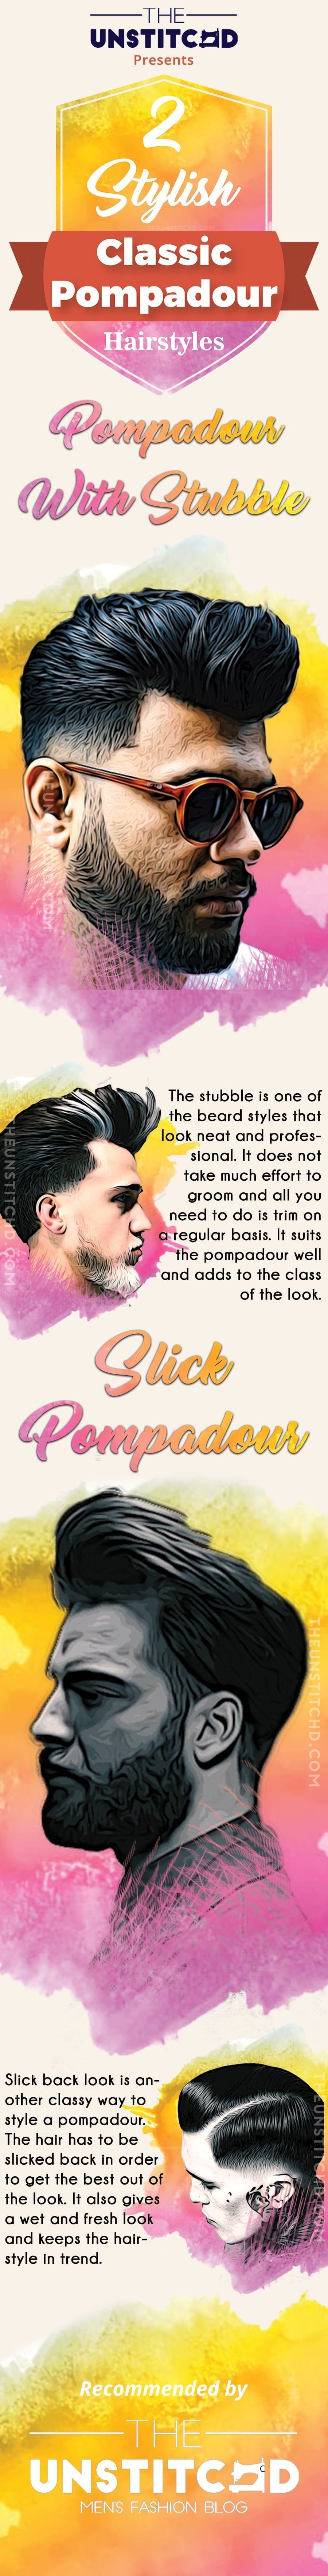 classic-Pompadour-info